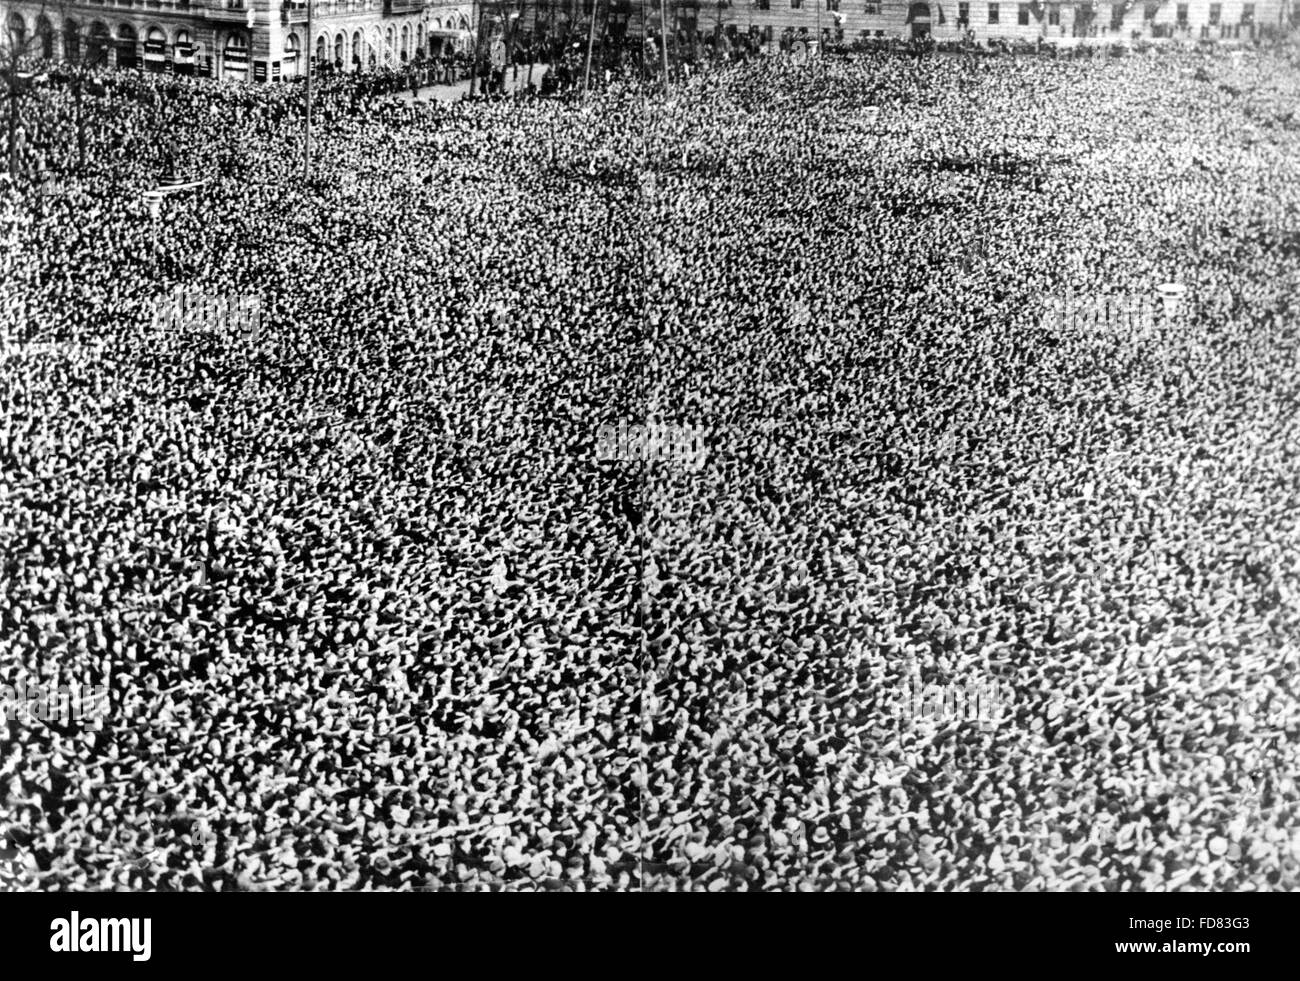 Menge in Berlin nach der Annexion Österreichs im Jahre 1938 Stockfoto